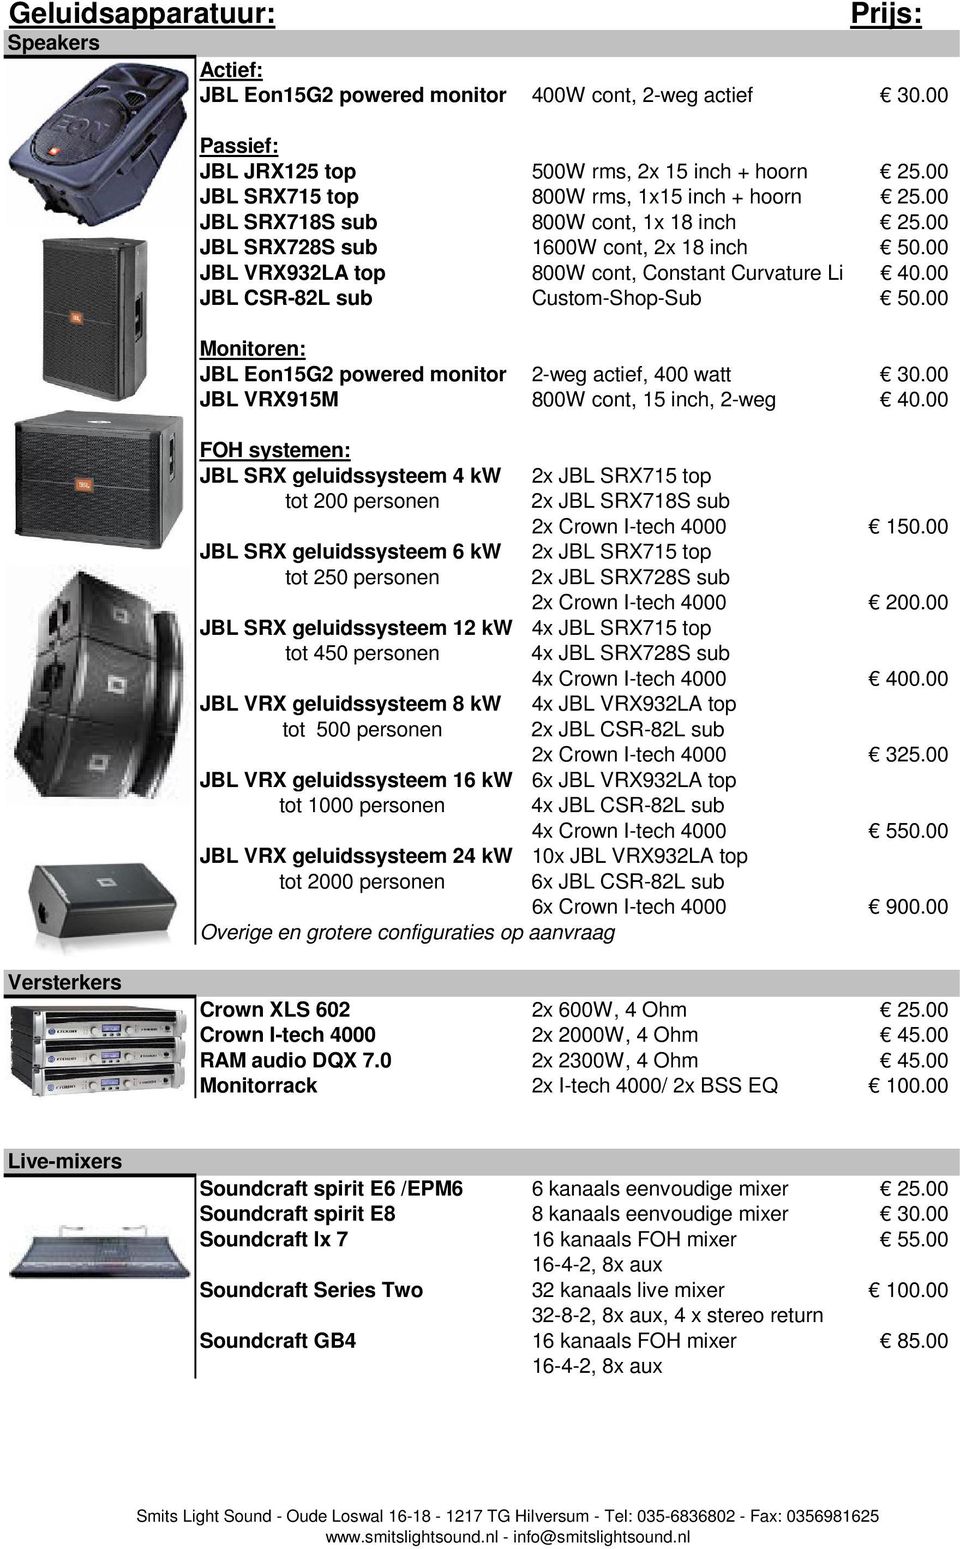 00 JBL CSR-82L sub Custom-Shop-Sub 50.00 Monitoren: JBL Eon15G2 powered monitor 2-weg actief, 400 watt 30.00 JBL VRX915M 800W cont, 15 inch, 2-weg 40.